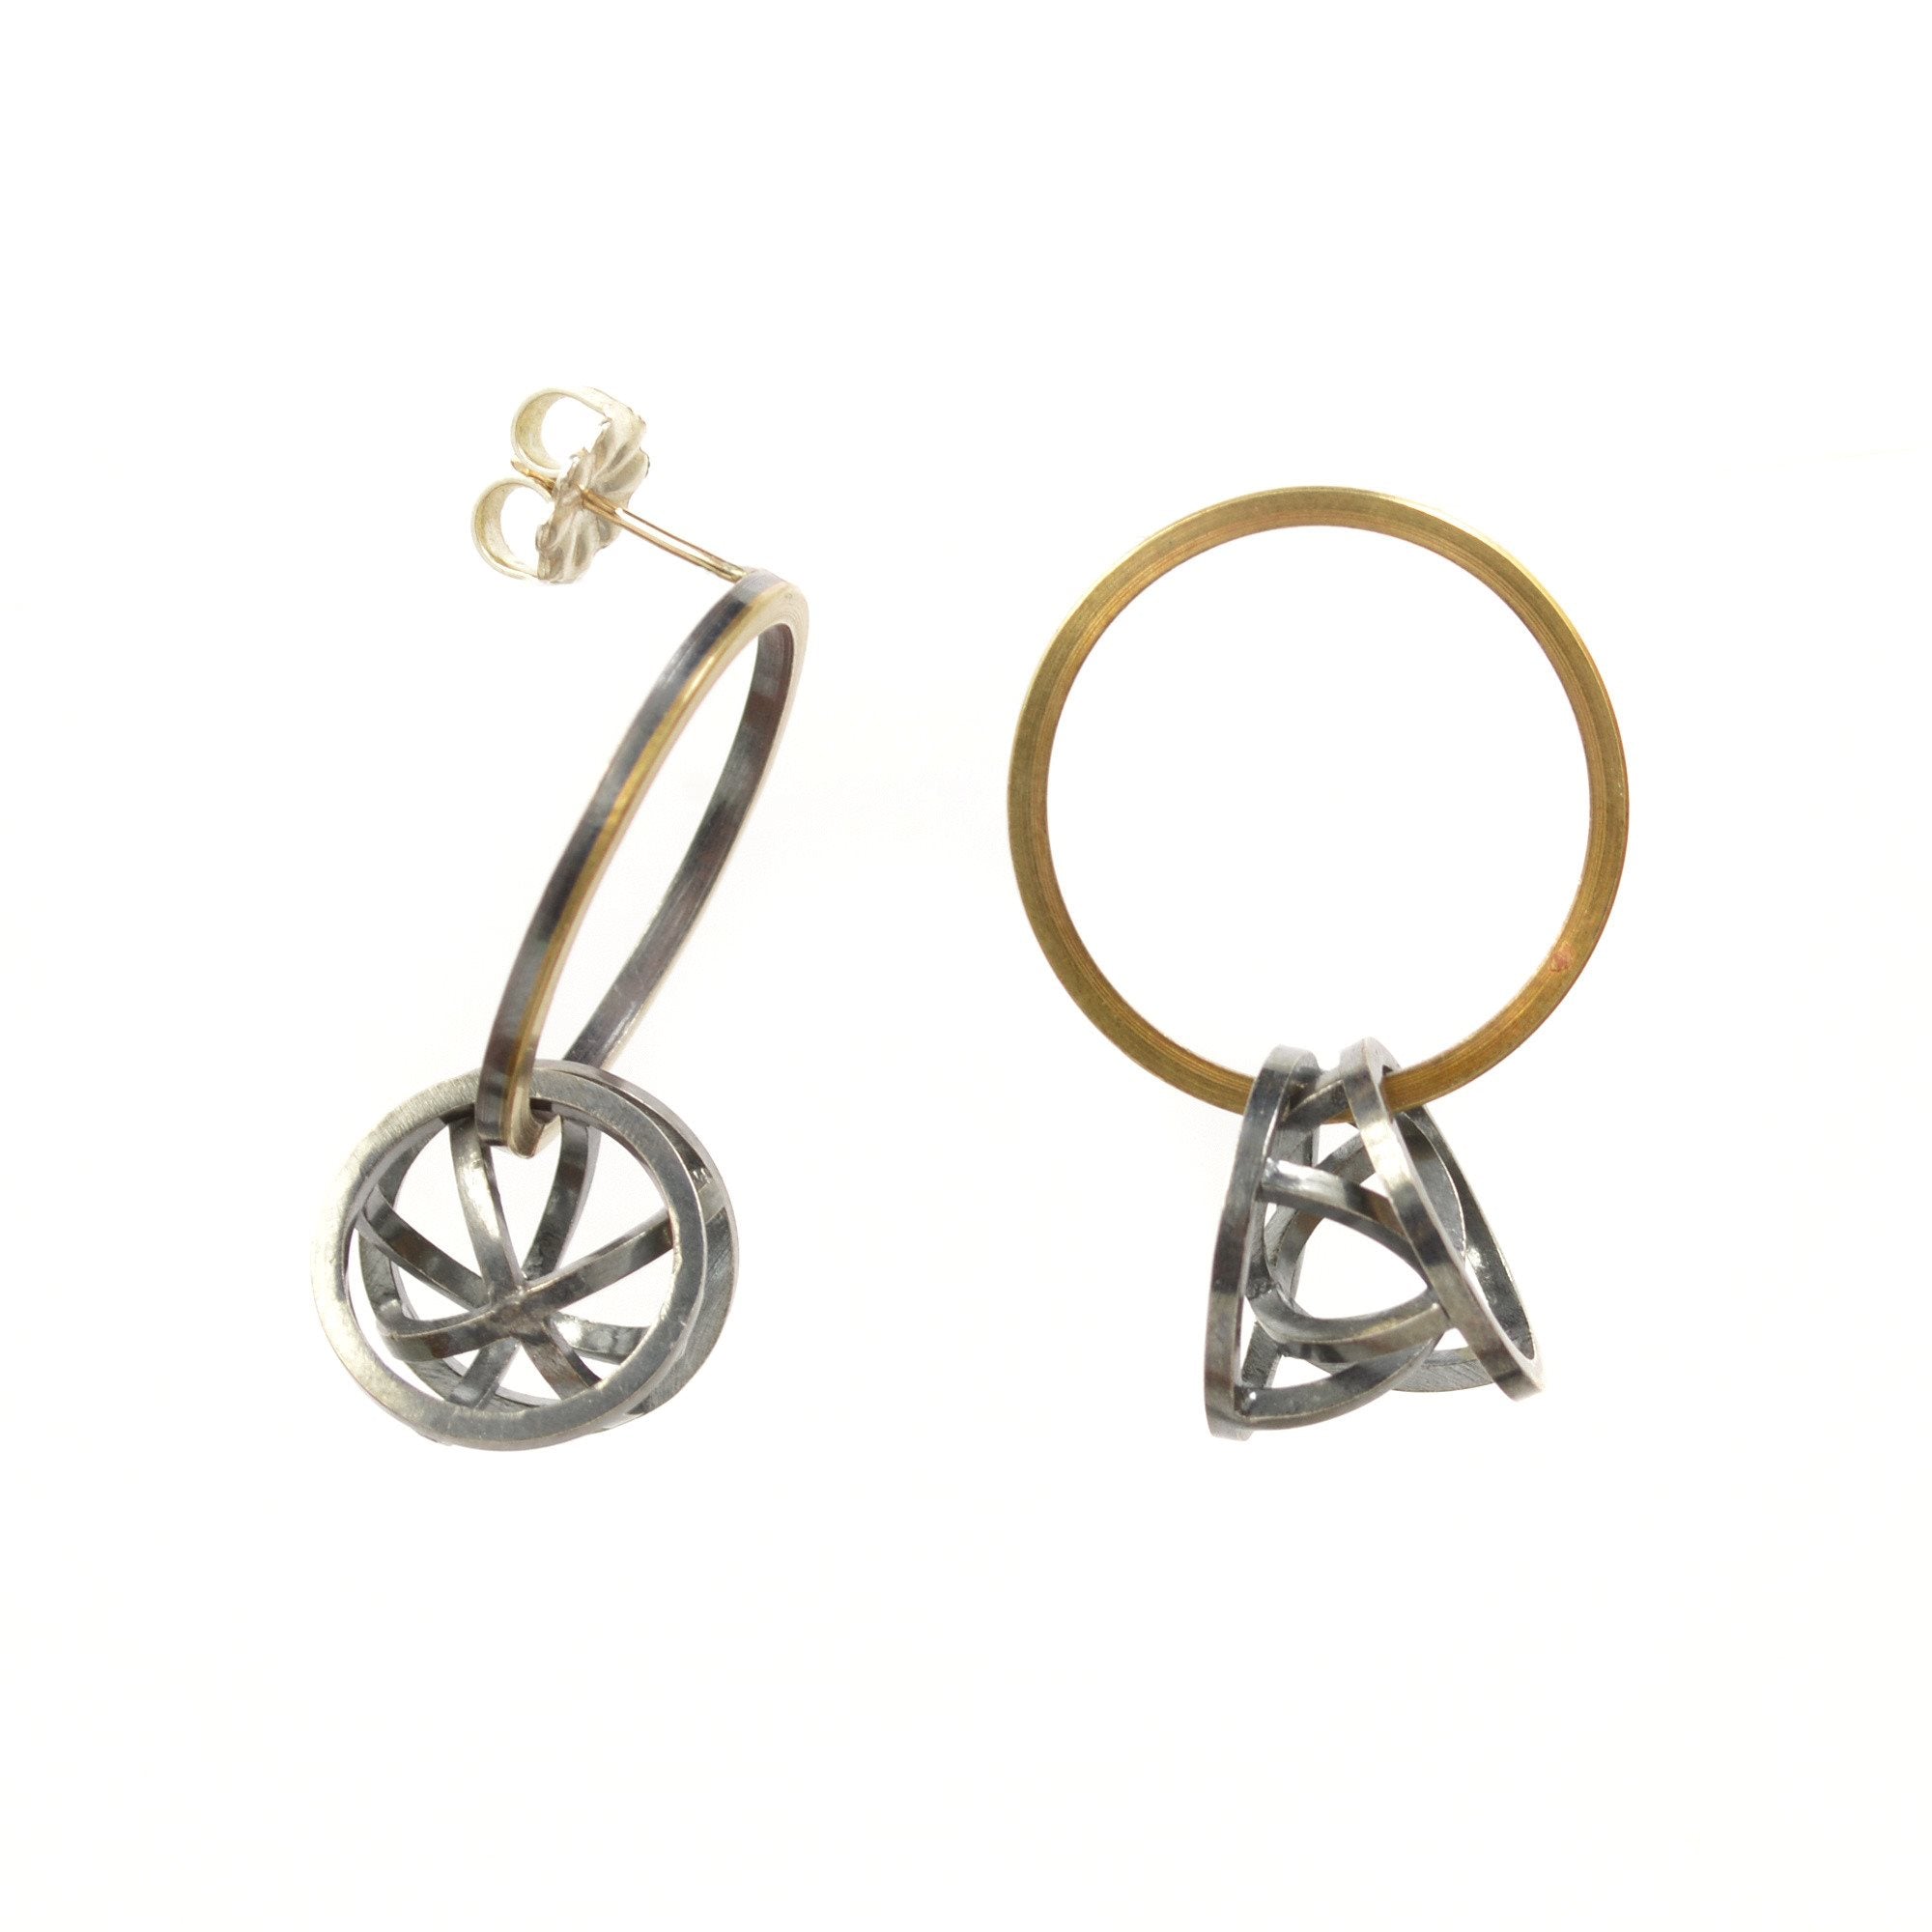 Orbit Hoop Earrings in Sterling Silver, 22k Gold, Black Patina